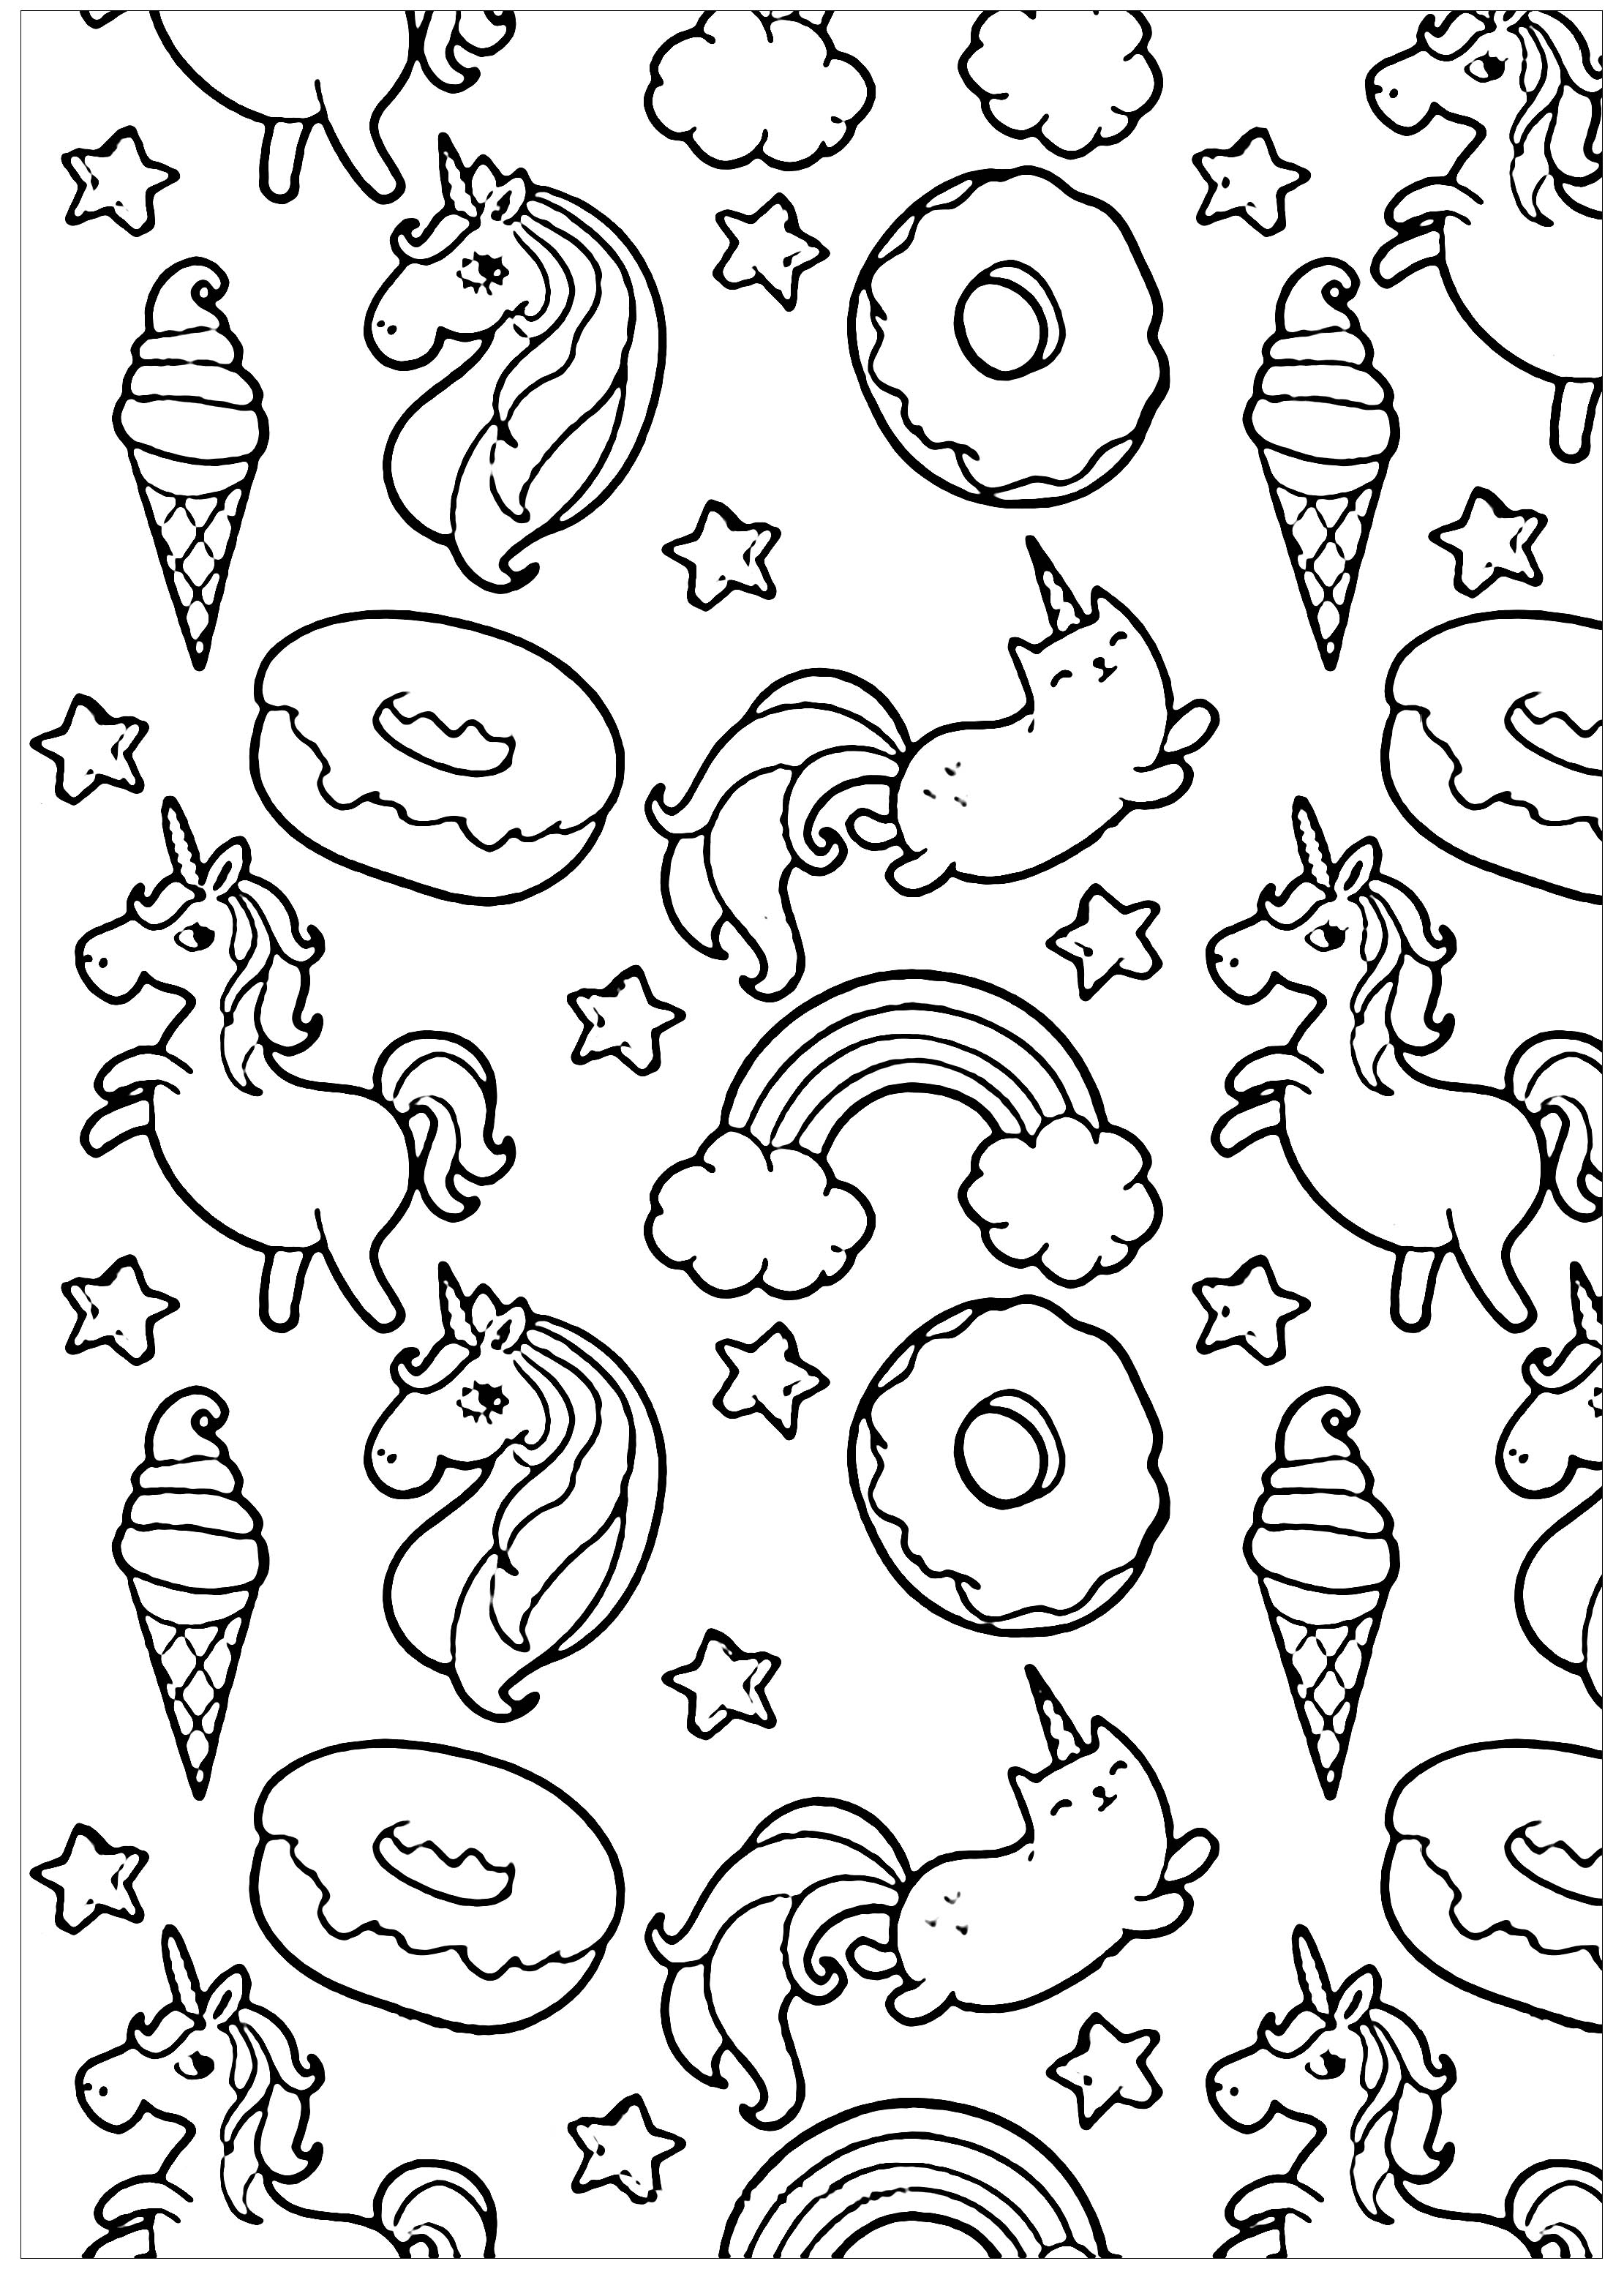 Pusheen donuts et licornes - Coloriage Kawaii - Coloriages pour enfants